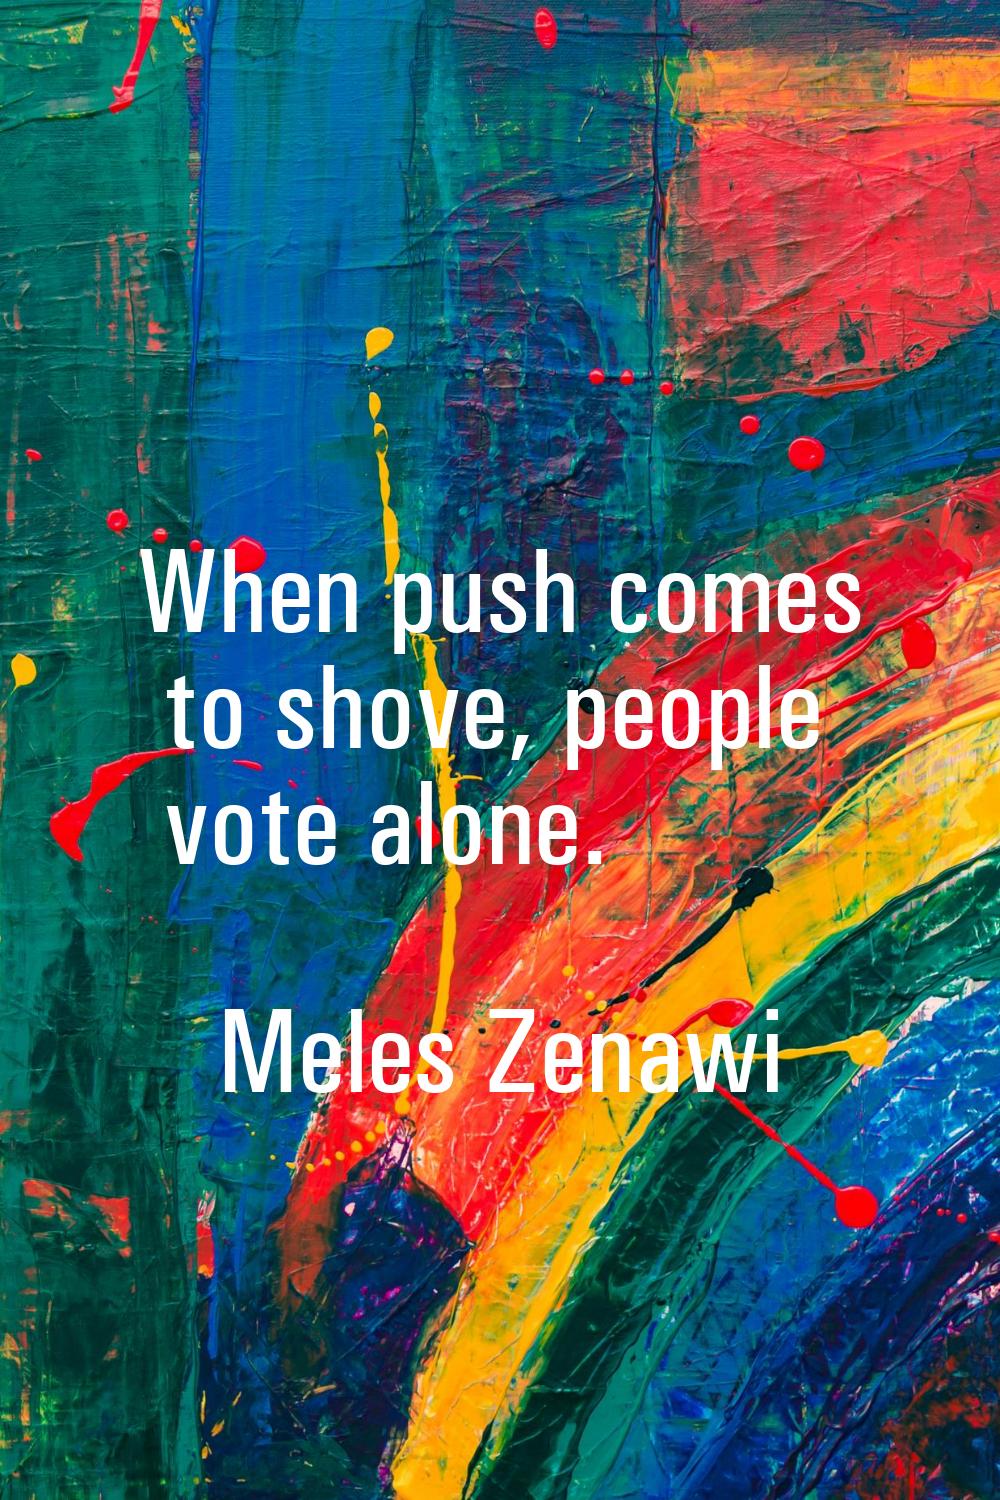 When push comes to shove, people vote alone.